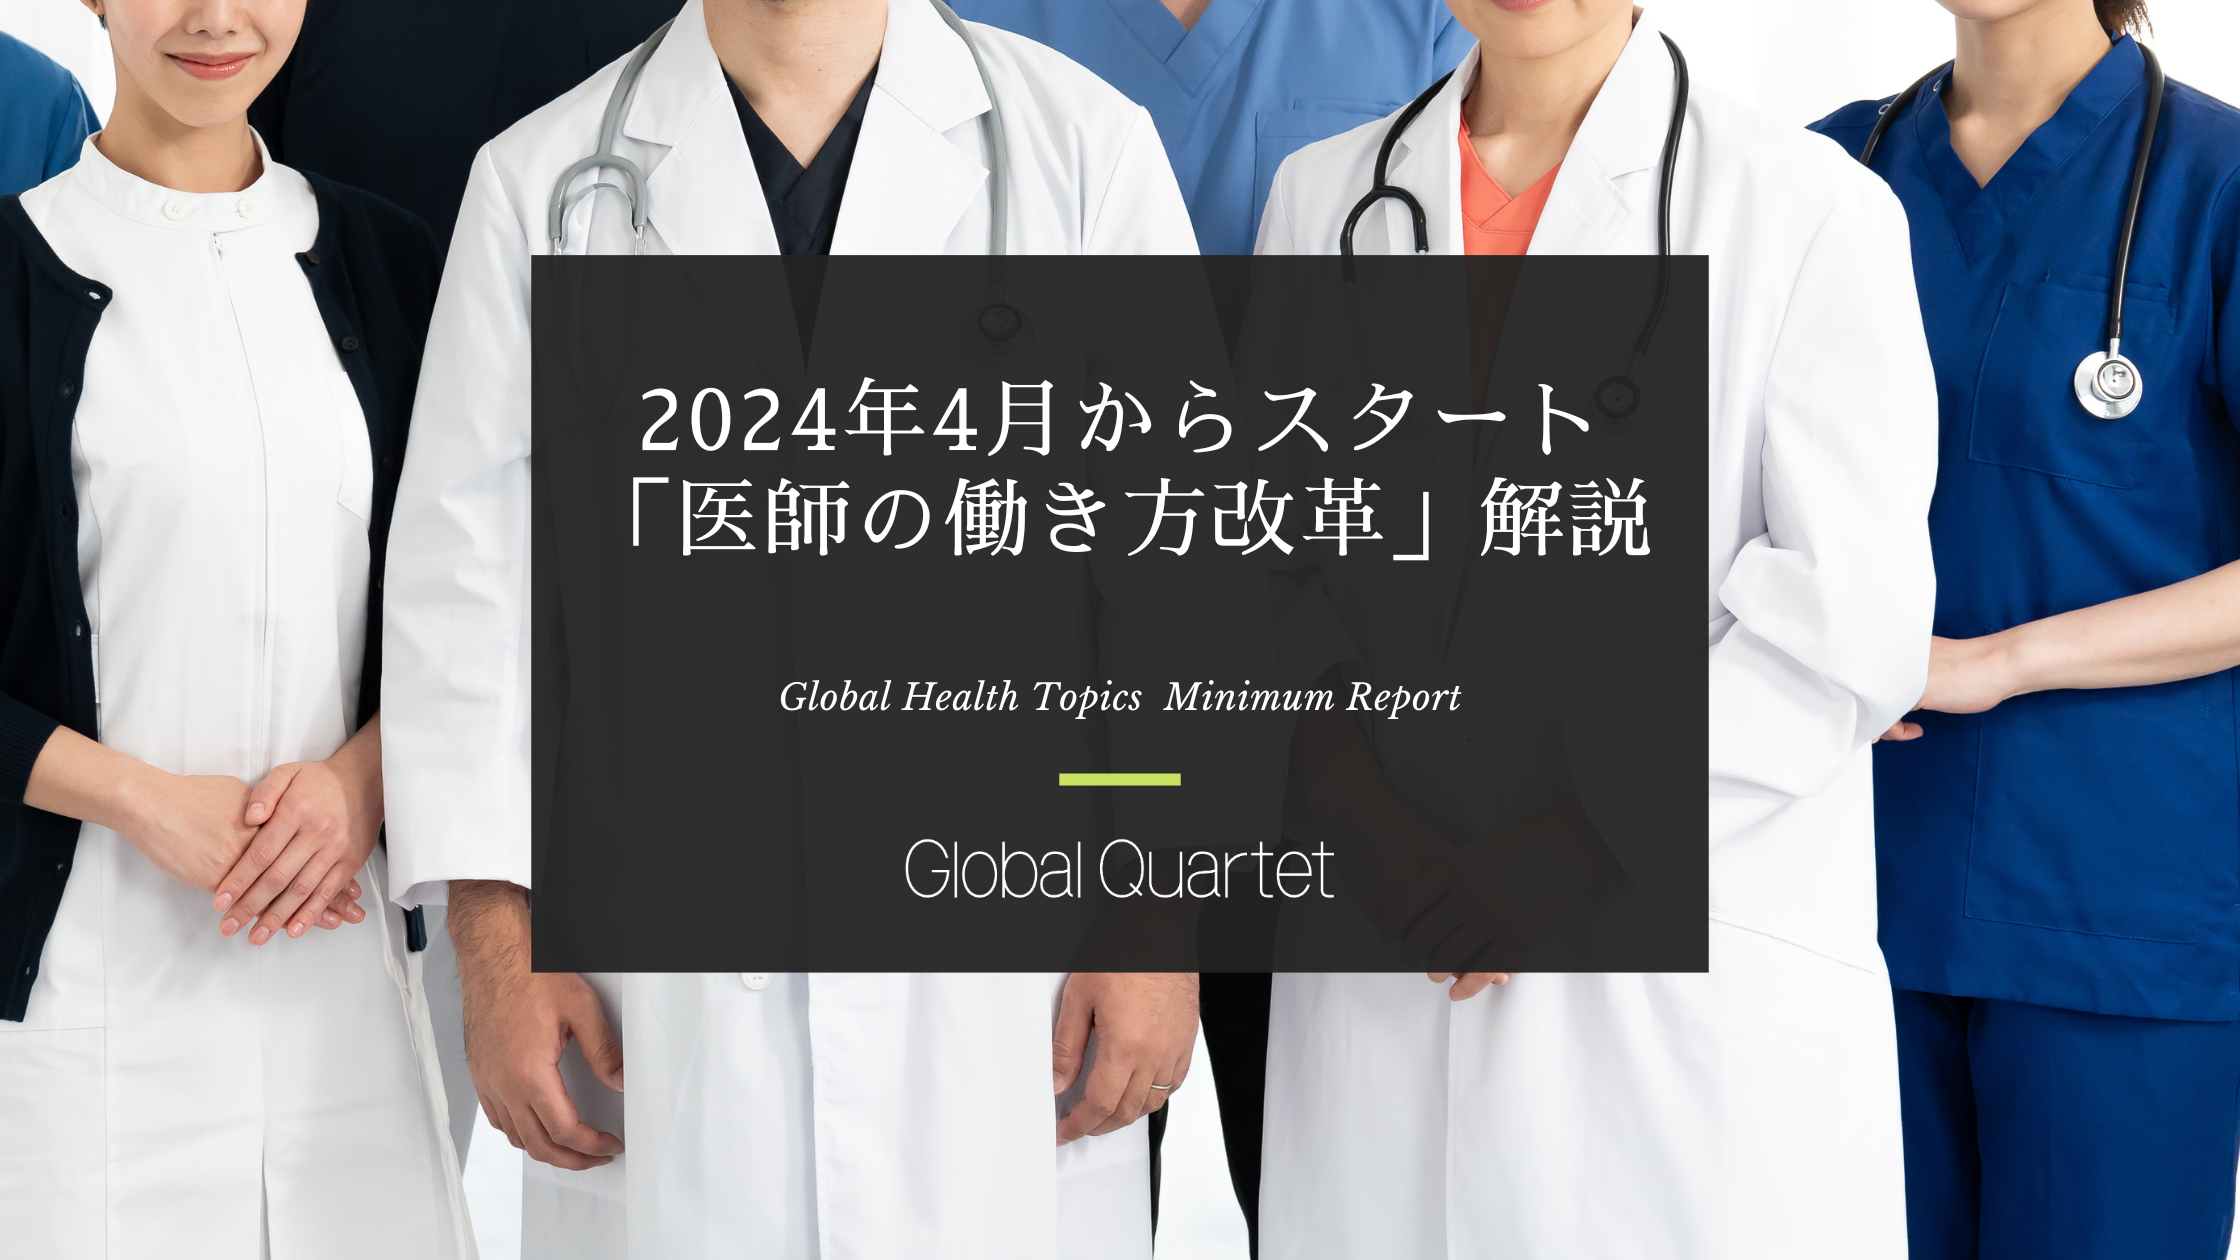 2024年4月からスタート「医師の働き方改革」解説